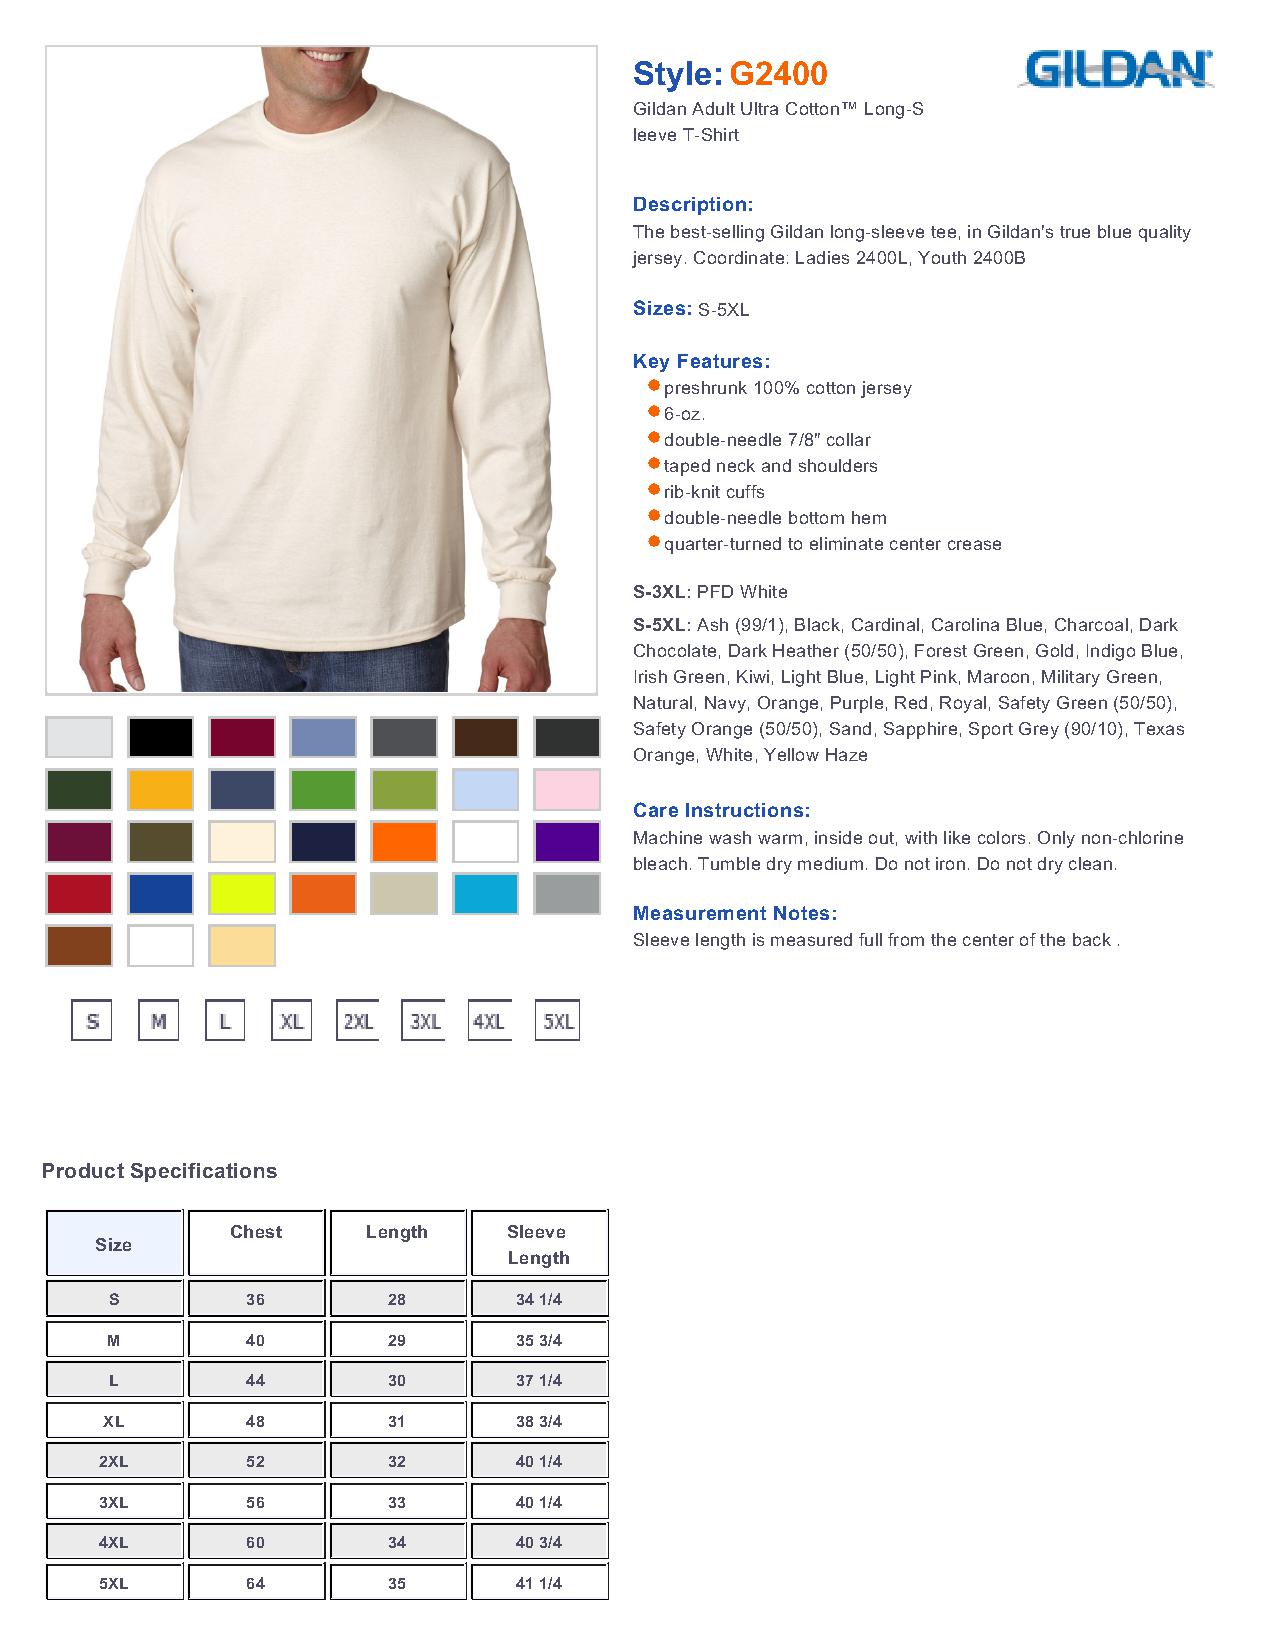 Gildan G2400 - Adult Ultra Cotton Long-Sleeve T-Shirt $5.98 - Men's T ...